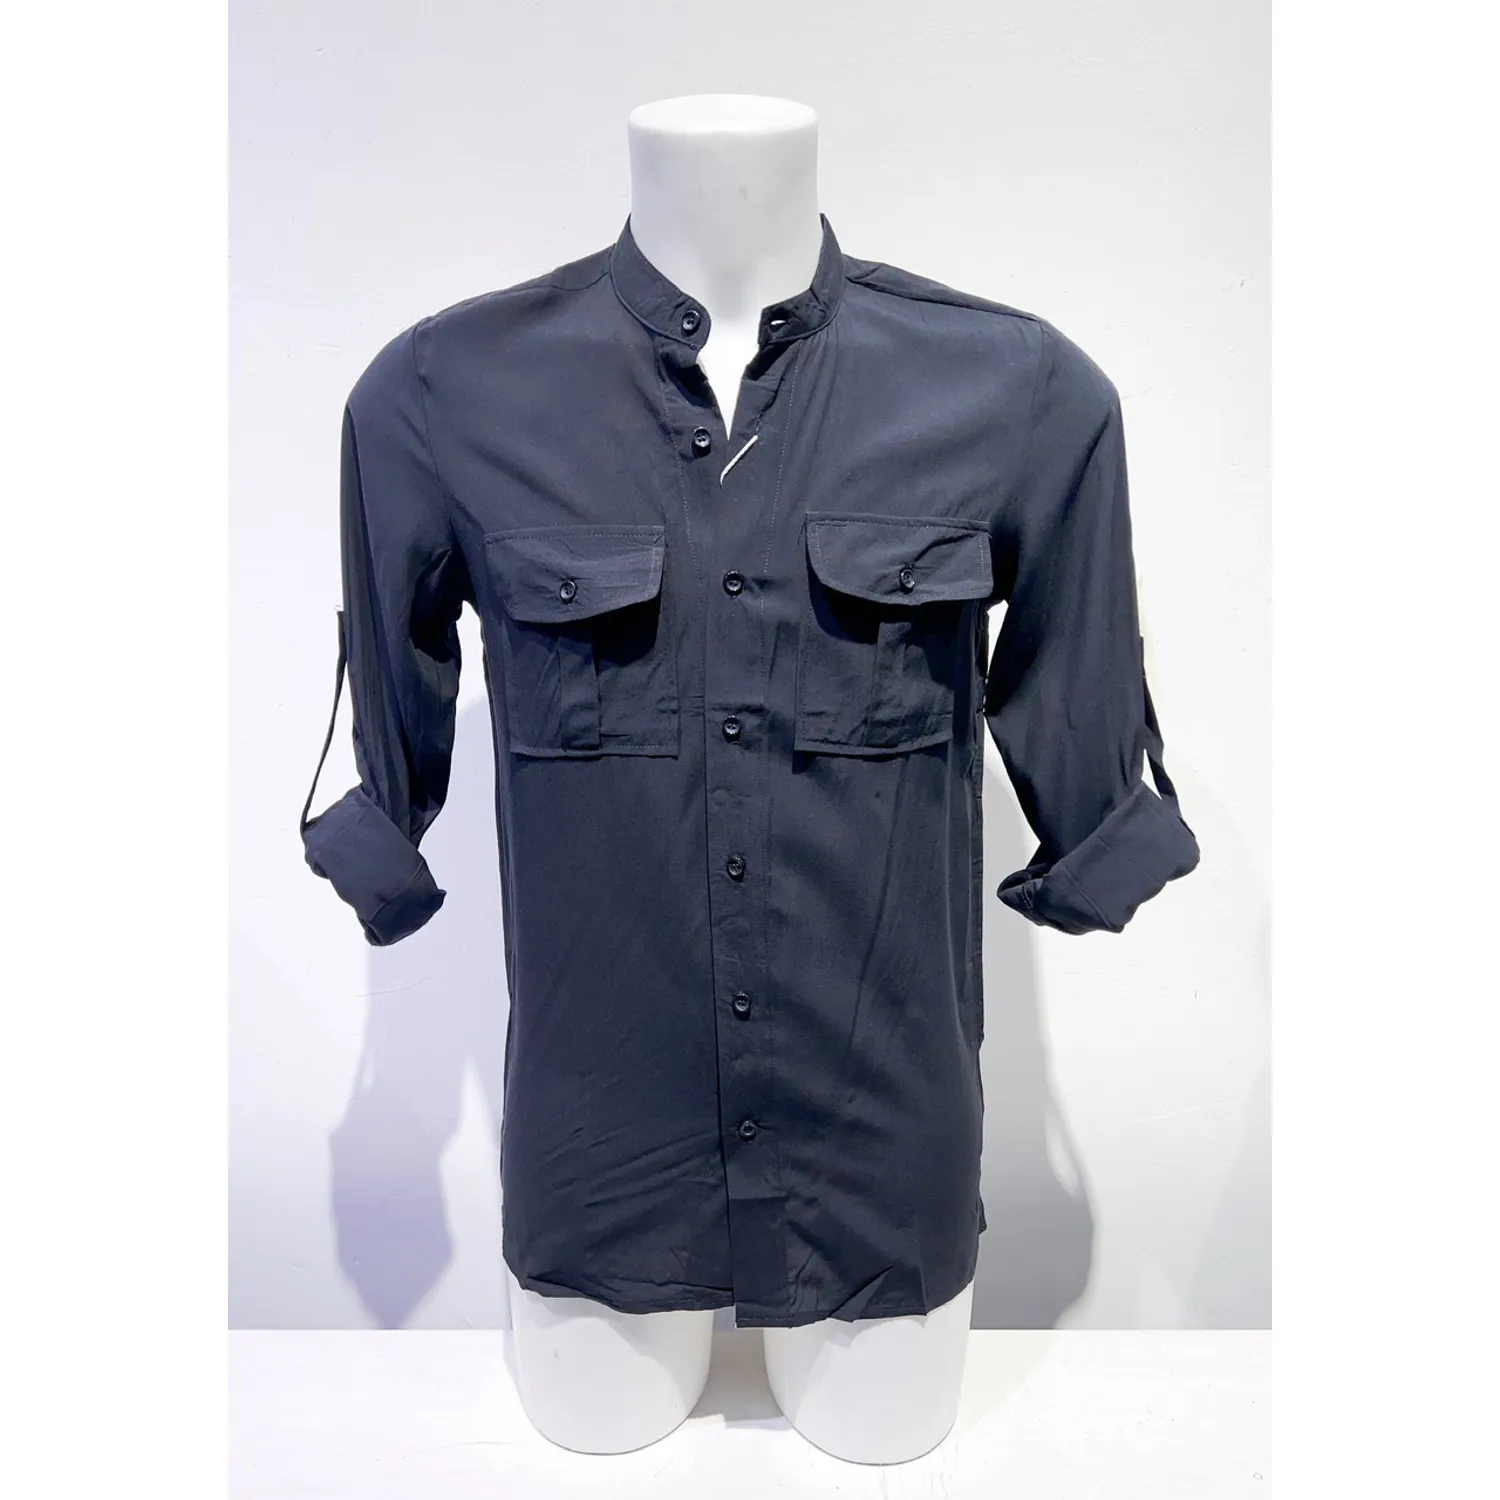 Ανδρικό μακρυμάνικο πουκάμισο μονόχρωμο μπλε με τσέπες